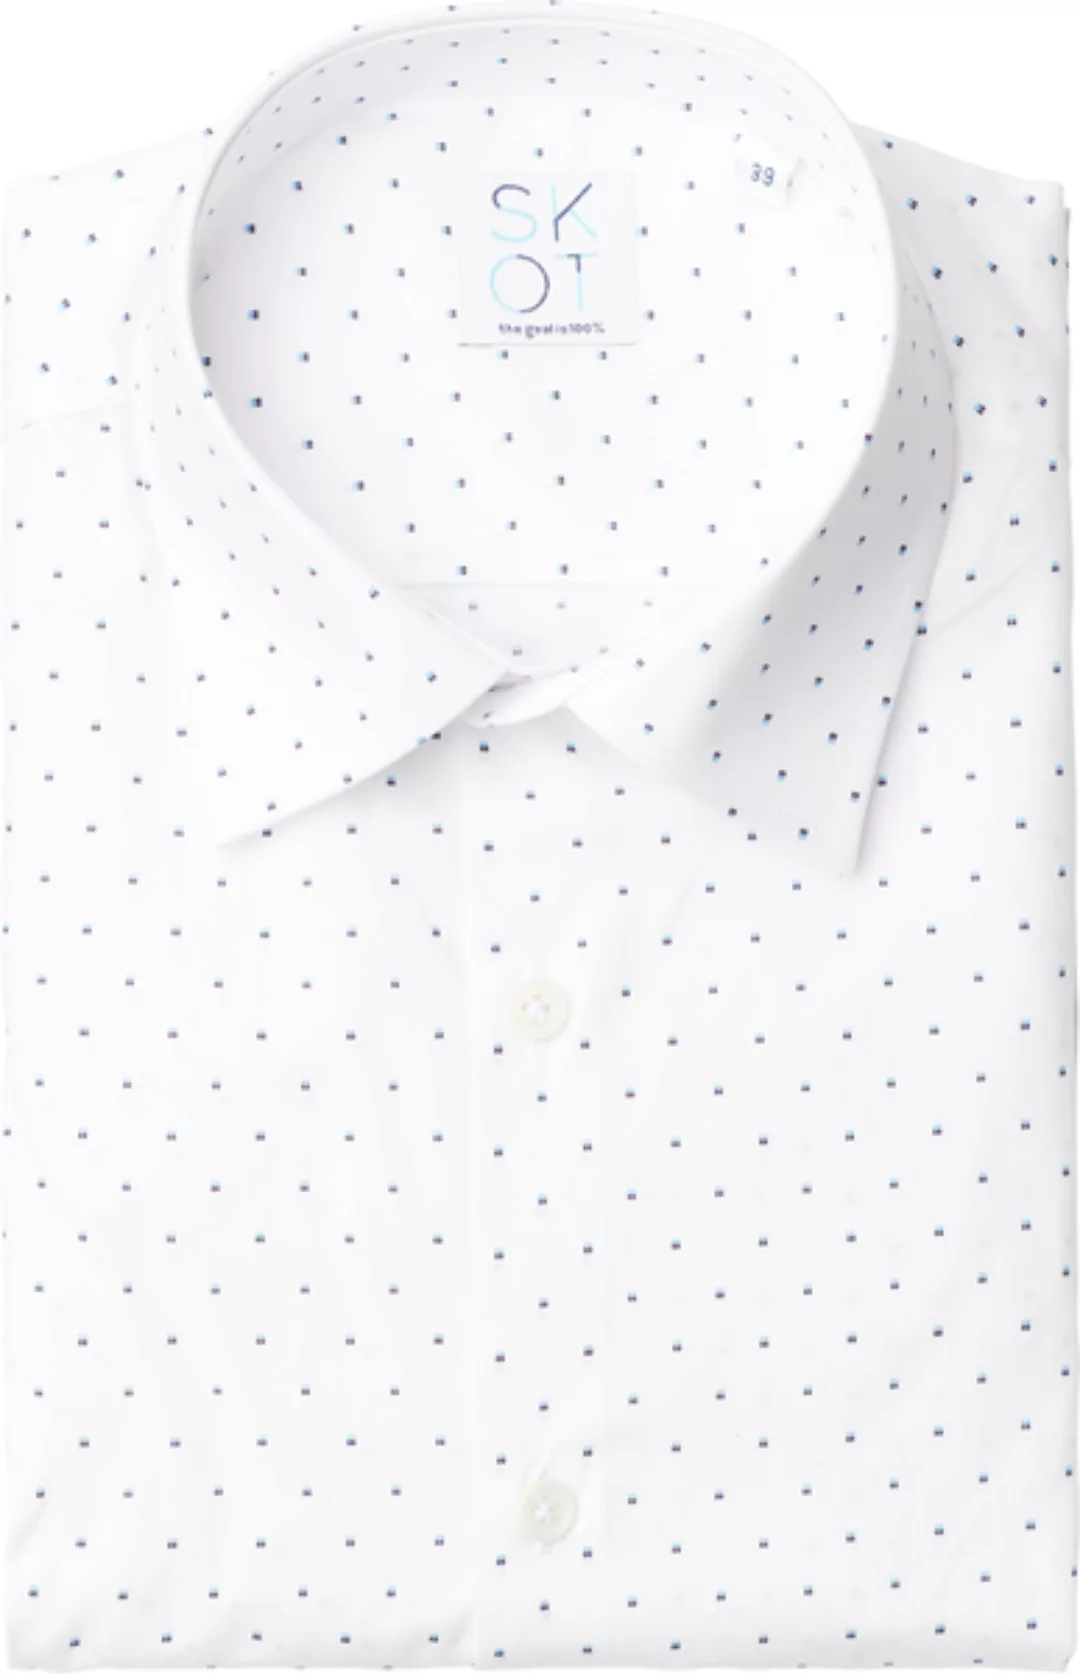 Nachhaltige Langarm Herren Hemd Spotted White Slim Fit 100% Bio günstig online kaufen